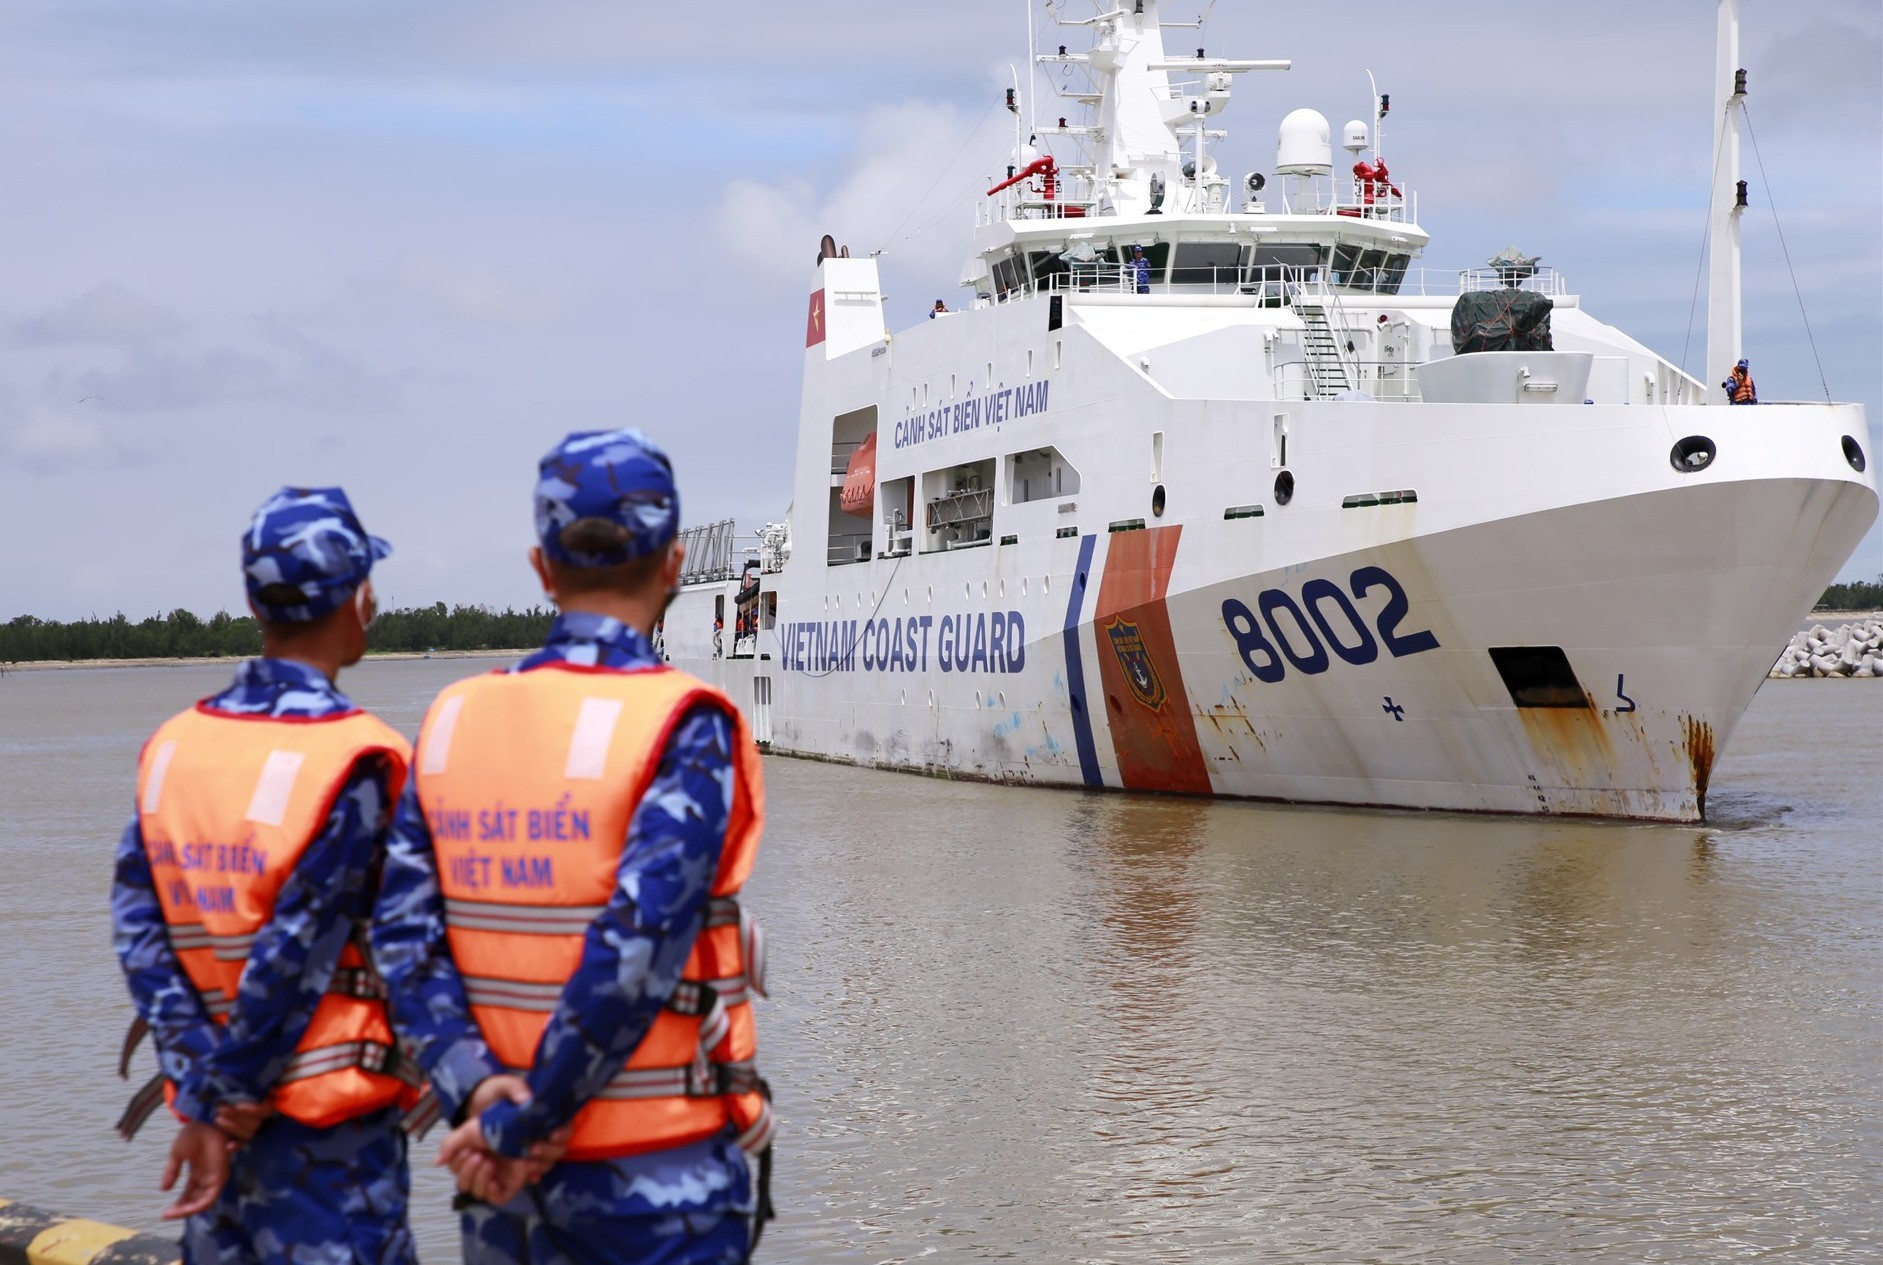 Tàu Cảnh sát biển 8002 về đến cảng Tam Quang, đưa 5 ngư dân và 13 thuyền viên gặp nạn an toàn về bờ. Ảnh: T.C